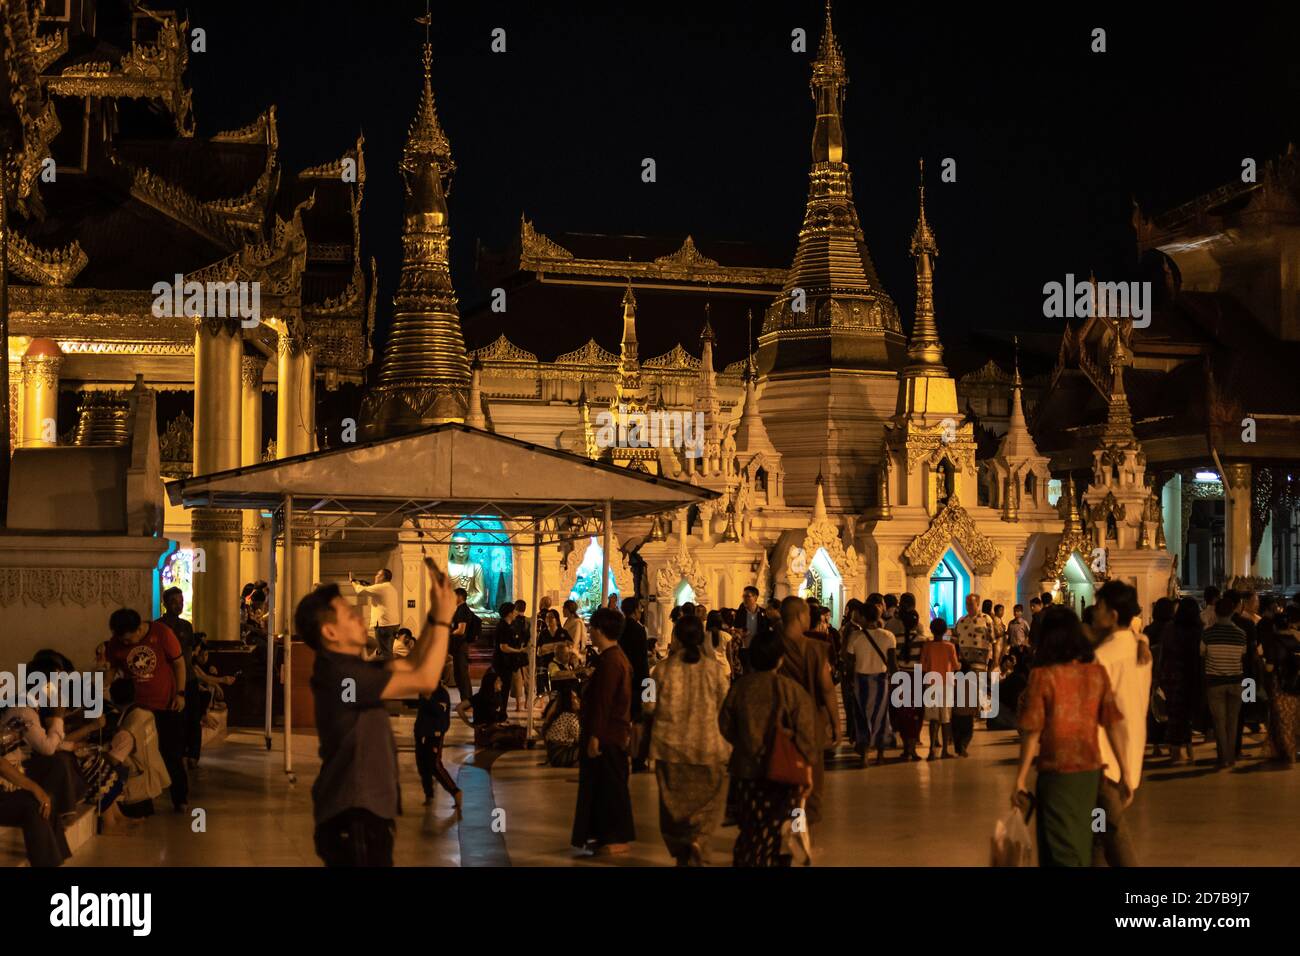 Yangon, Myanmar - 30. Dezember 2019: Die Menschen besuchen die Shwedagon Pagode und ihre umliegenden goldenen Strukturen während des dunklen Abends Stockfoto